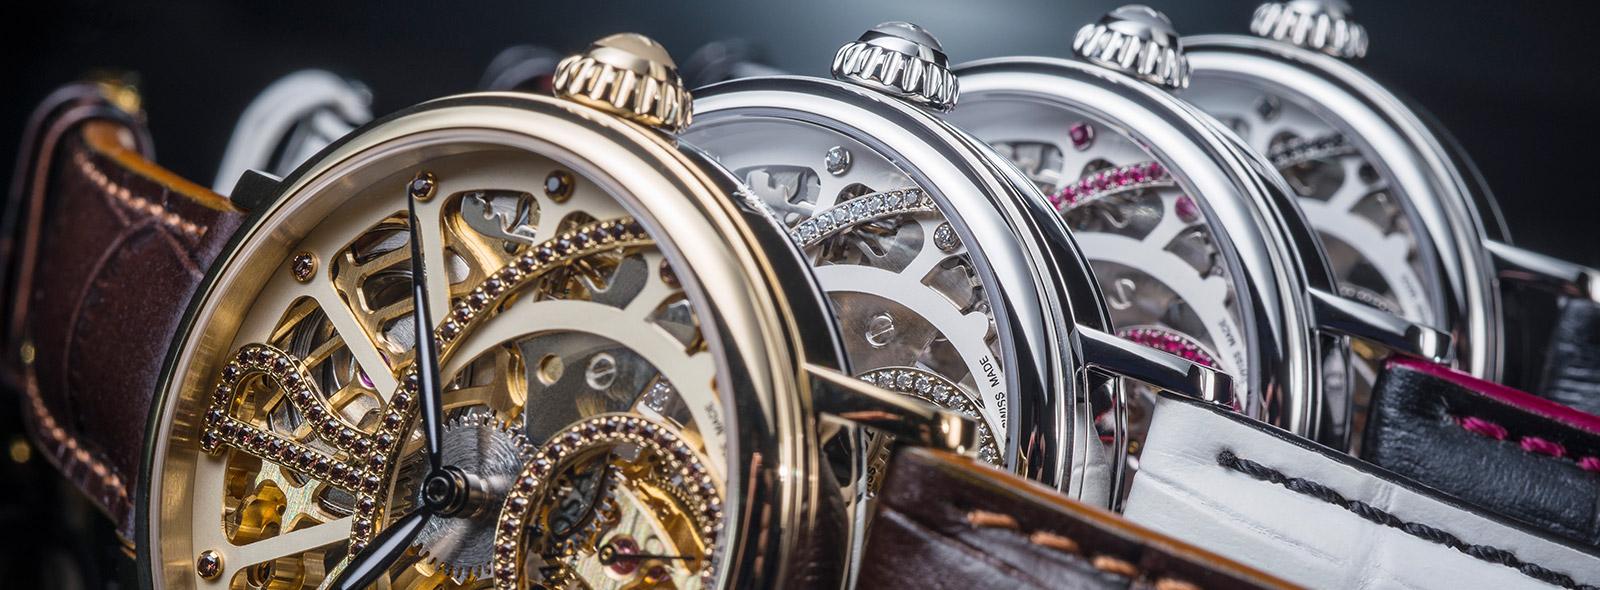 Swiss Made - szwajcarskie zegarki z tradycją! | Zegarownia.pl Blog